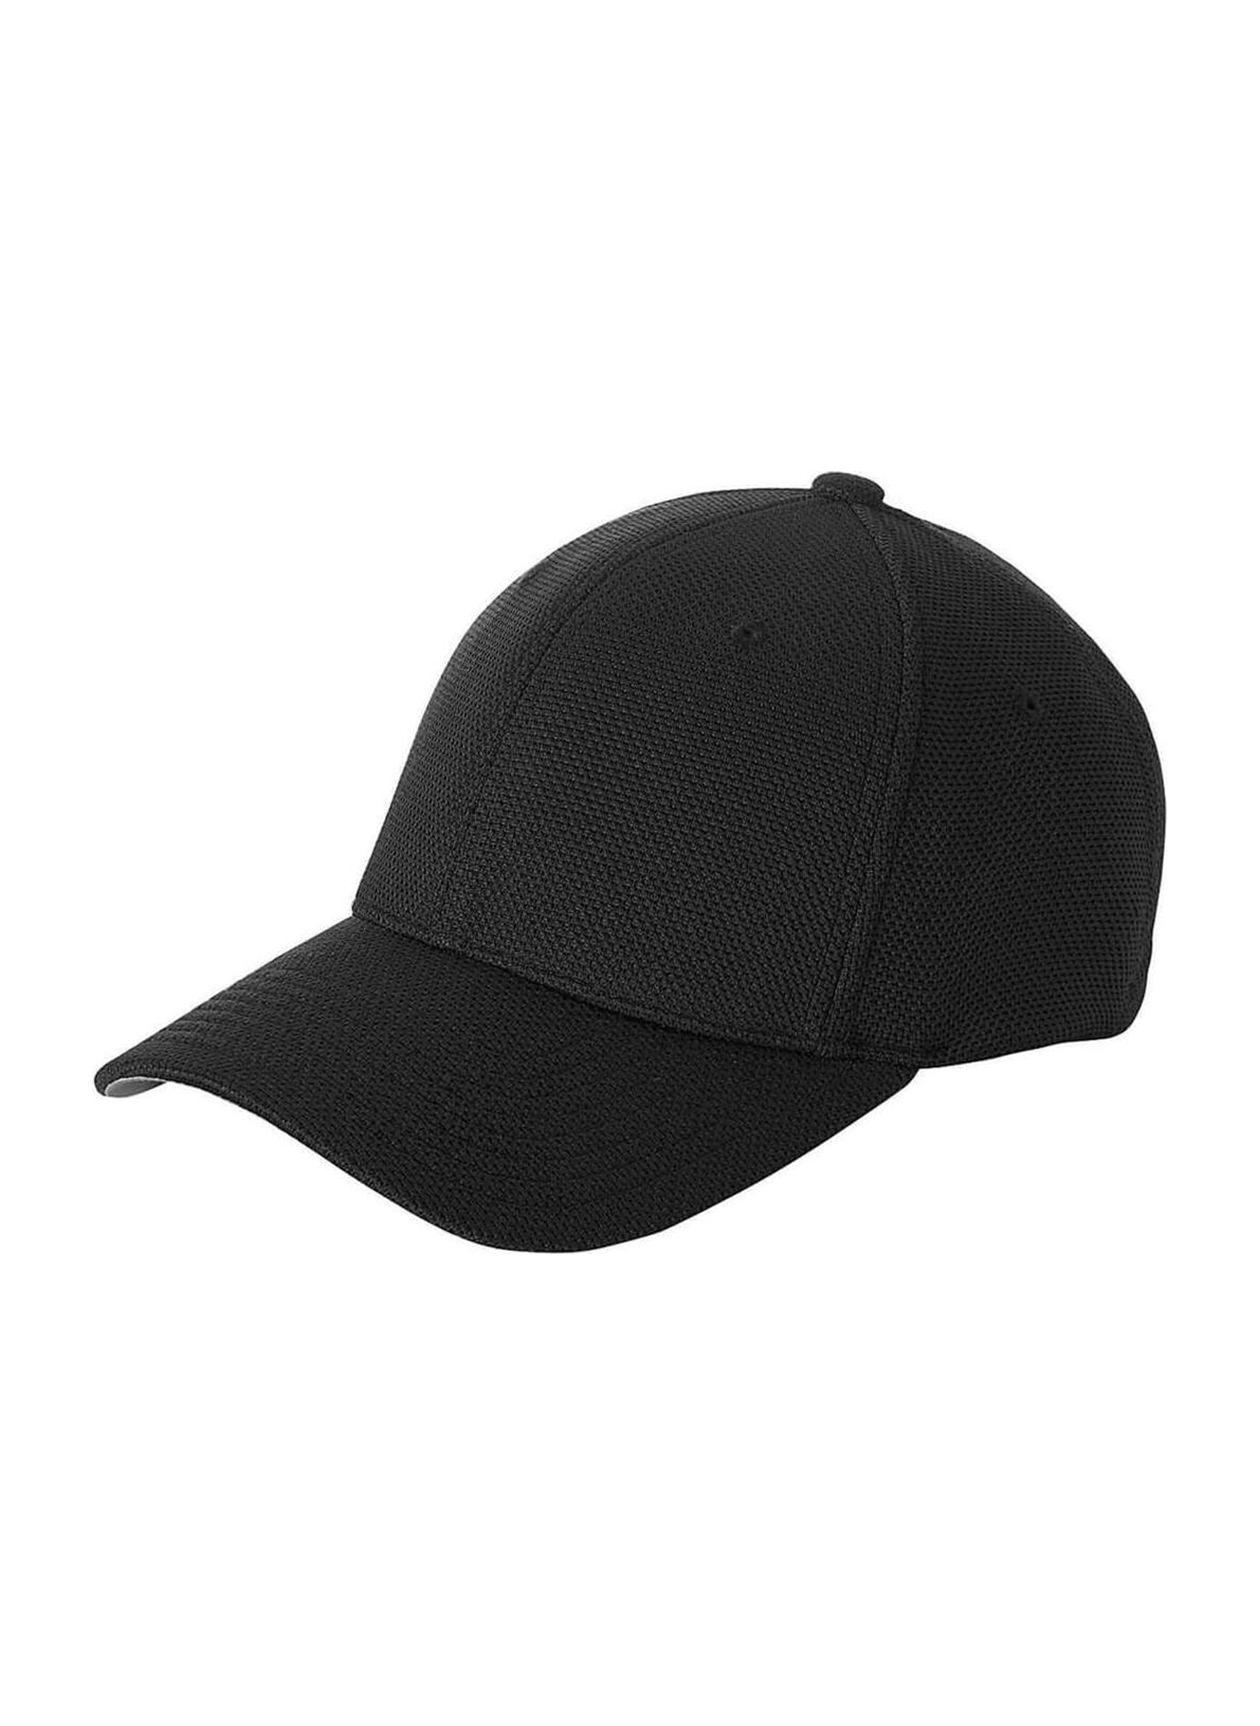 Flexfit Black Cool & Dry Pique Mesh Hat